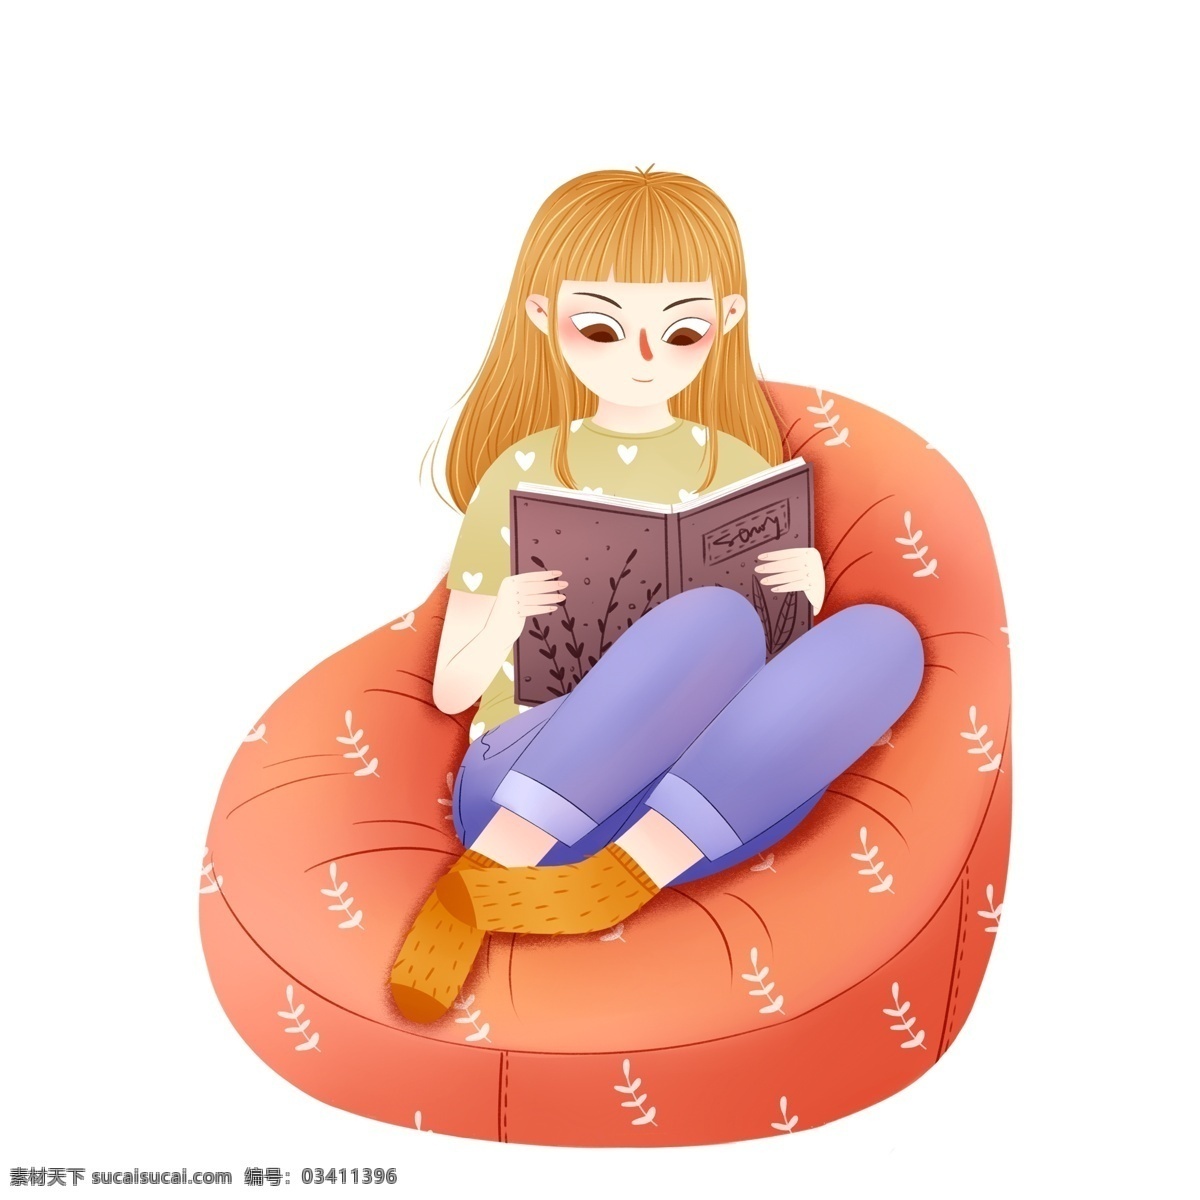 坐在 沙发 上 看书 女孩 图案 卡通人物 阅读 手绘 创意元素 psd元素 免抠元素